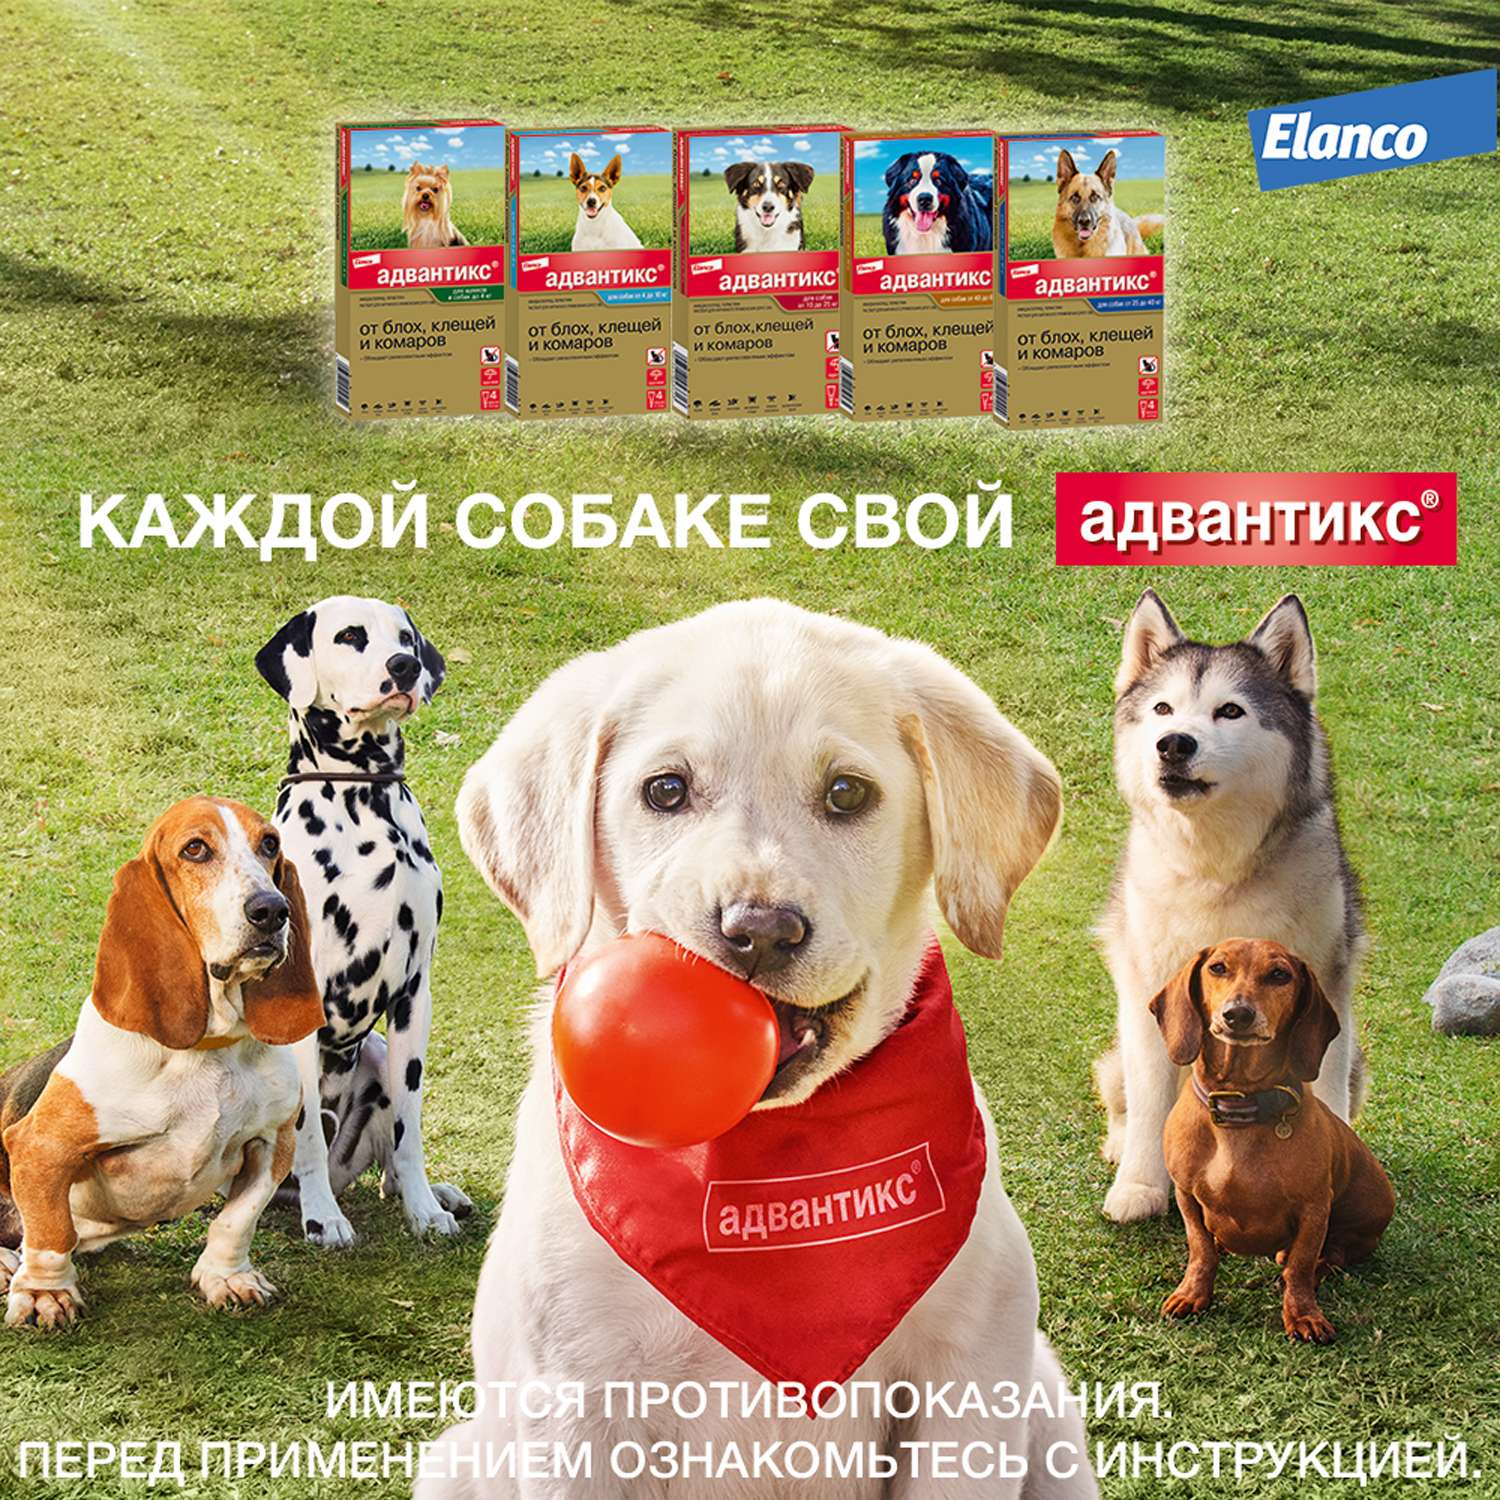 Капли для собак Elanco Адвантикс до 4кг против блох и клещей 1пипетка - фото 9